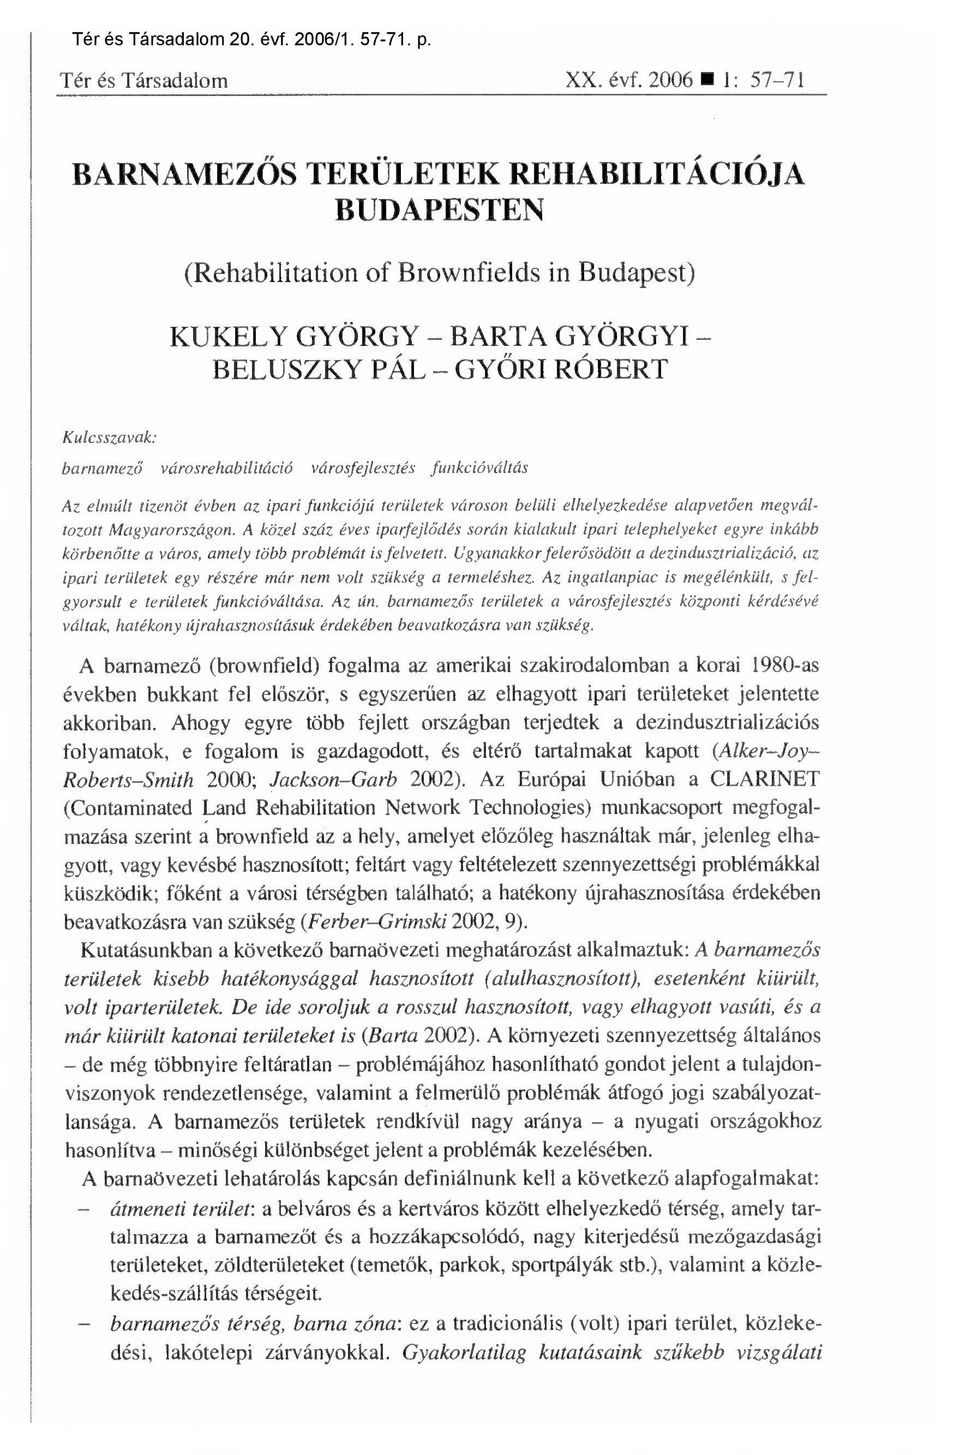 2006 1: 57-71 BARNAMEZŐS TERÜLETEK REHABILITÁCIÓJA BUDAPESTEN (Rehabilitation of Brownfields in Budapest) KUKELY GYÖRGY BARTA GYÖRGYI BELUSZKY PÁL GYŐRI RÓBERT Kulcsszavak: barnamező